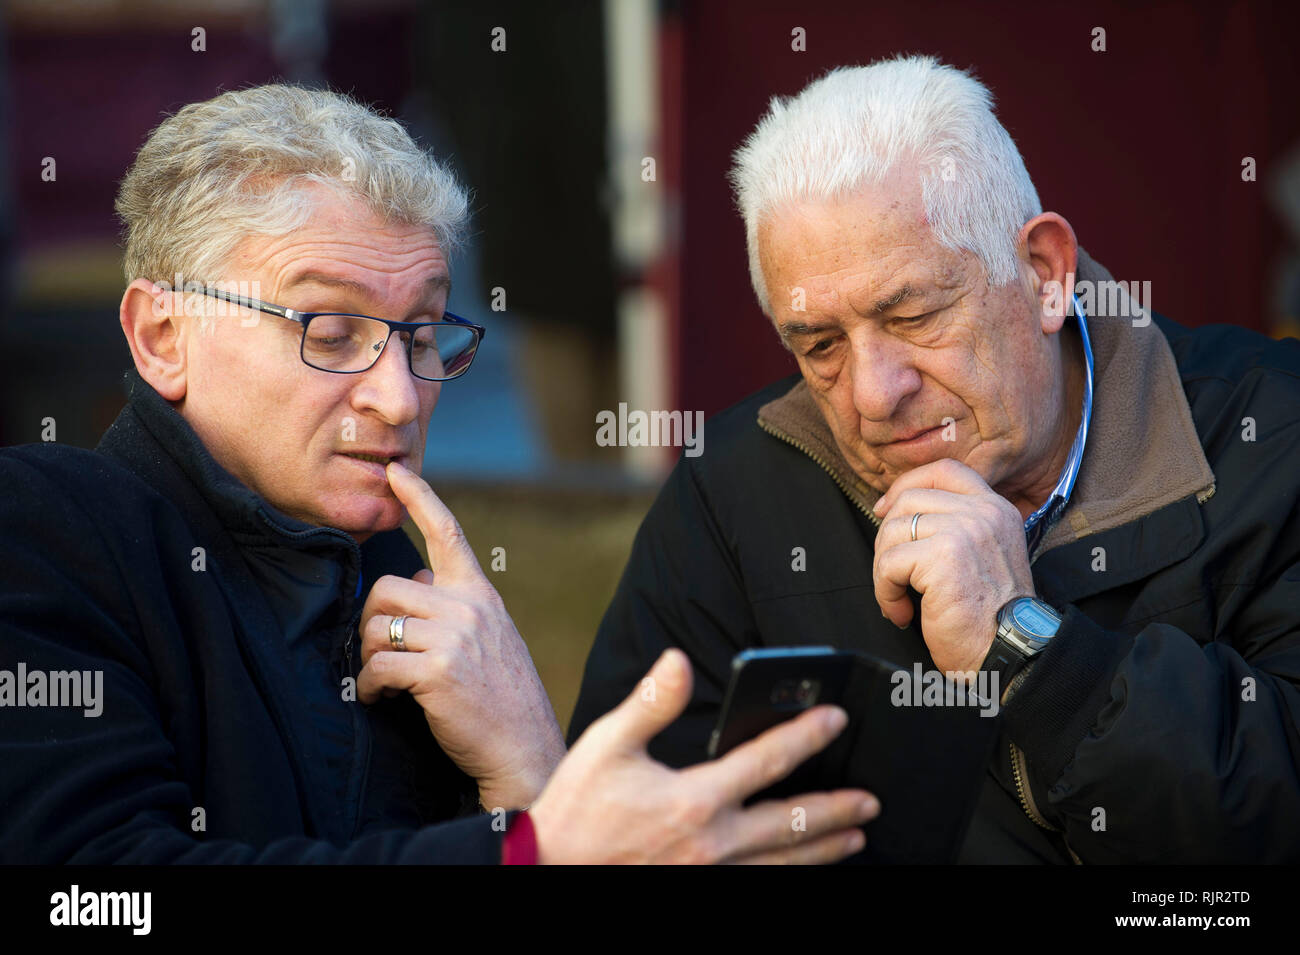 L'Italia, Lombardia, Monza, gli anziani sul banco come studio di un telefono cellulare aziendale Foto Stock